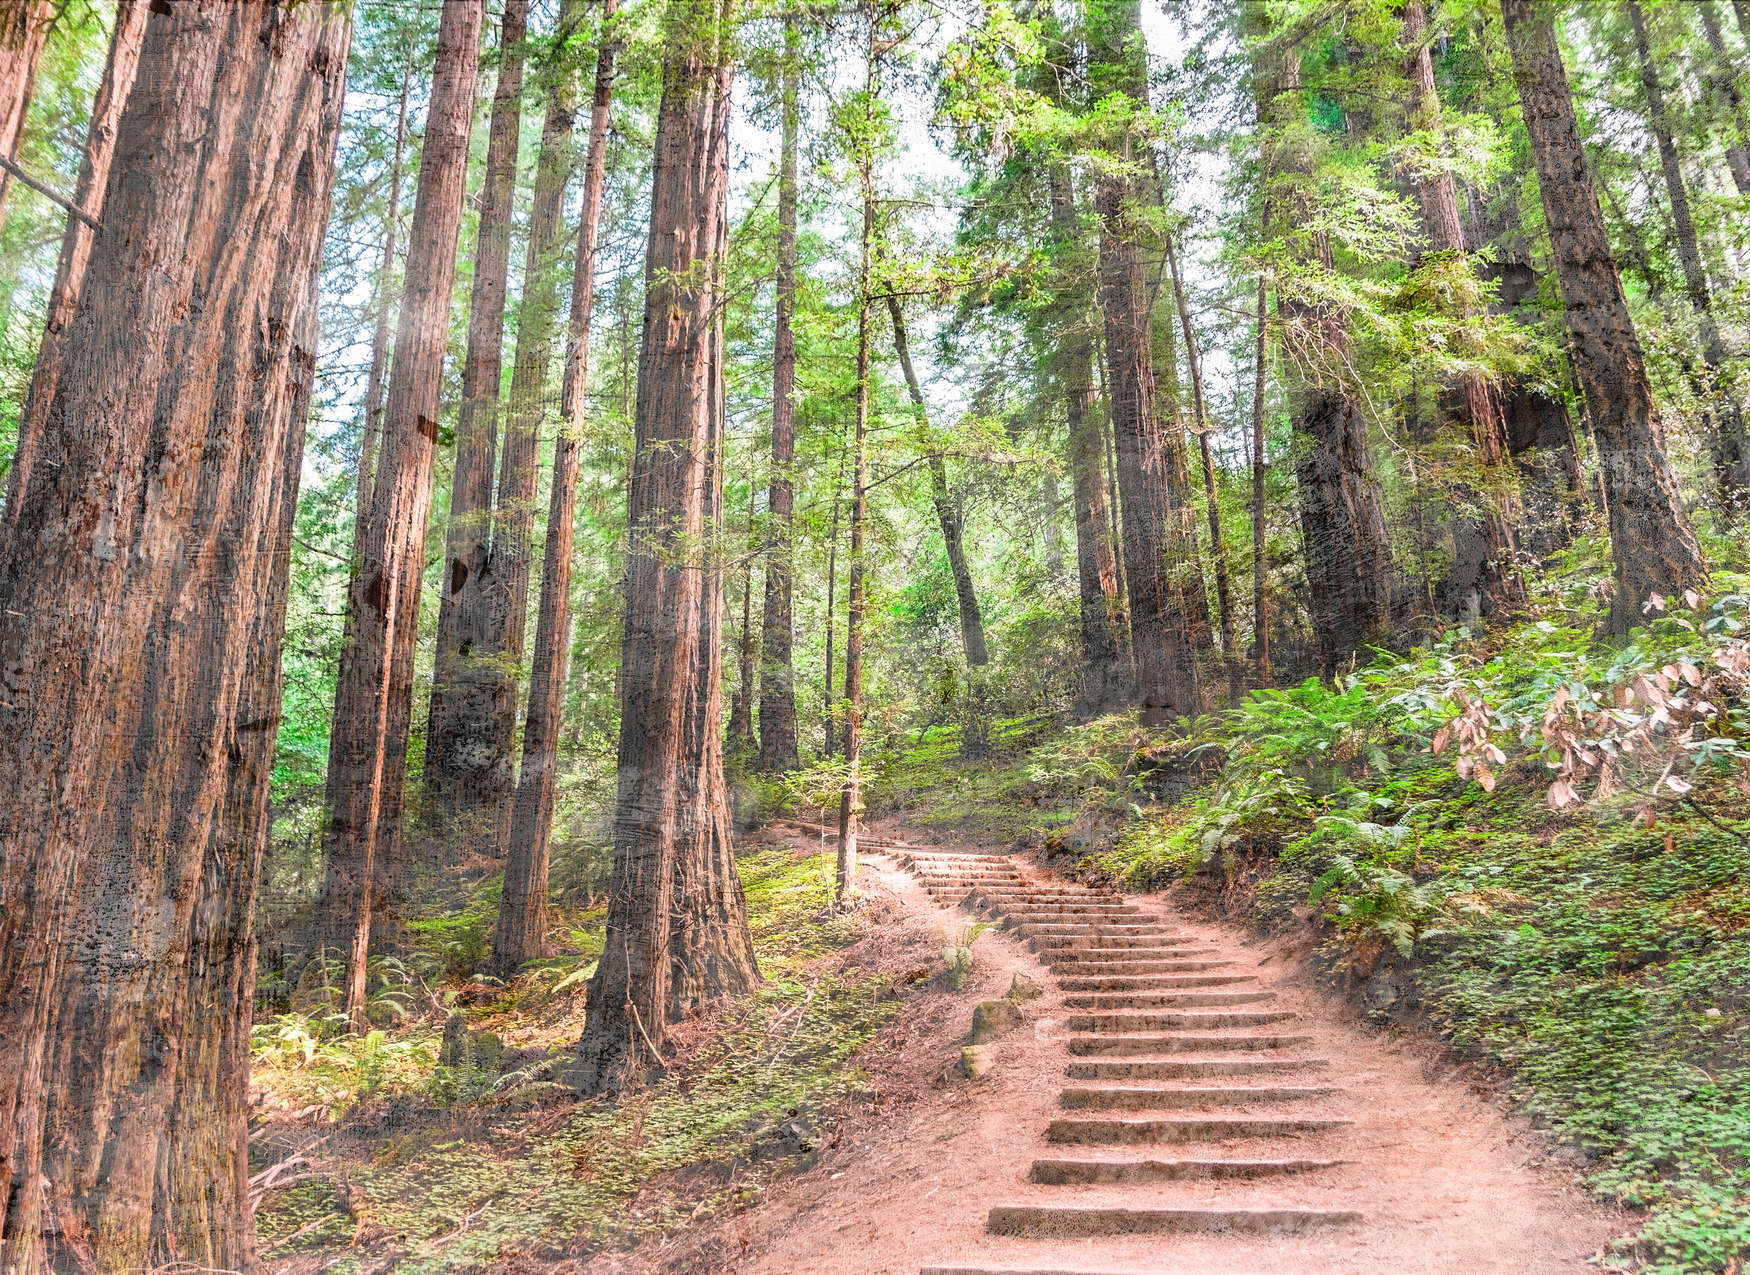             Escalier en bois à travers la forêt - Brun, Vert, Bleu
        